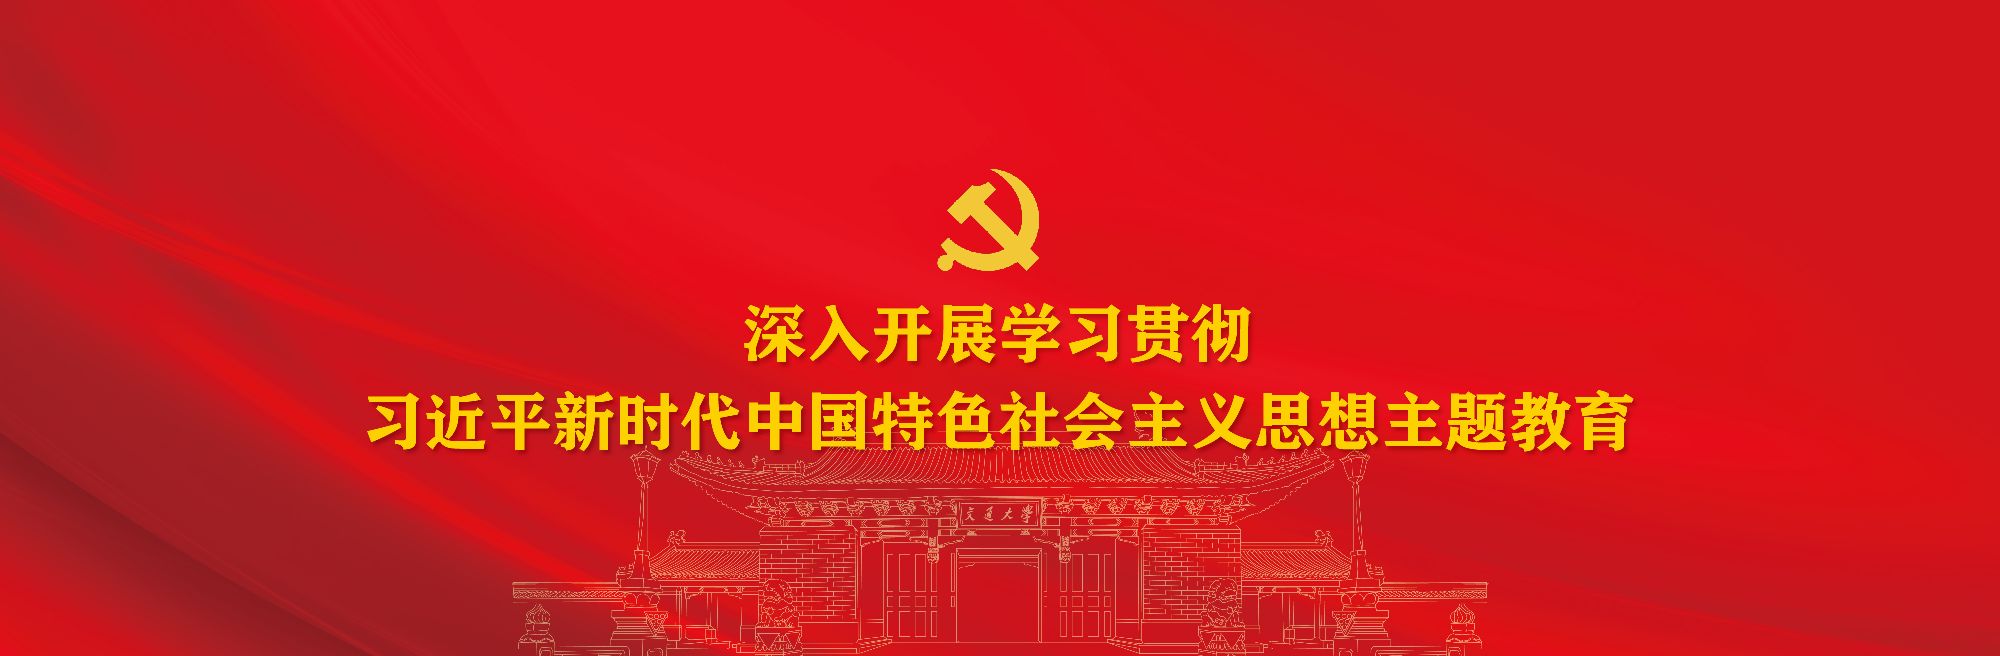 习近平新时代中国特色社会主义思想主题教育